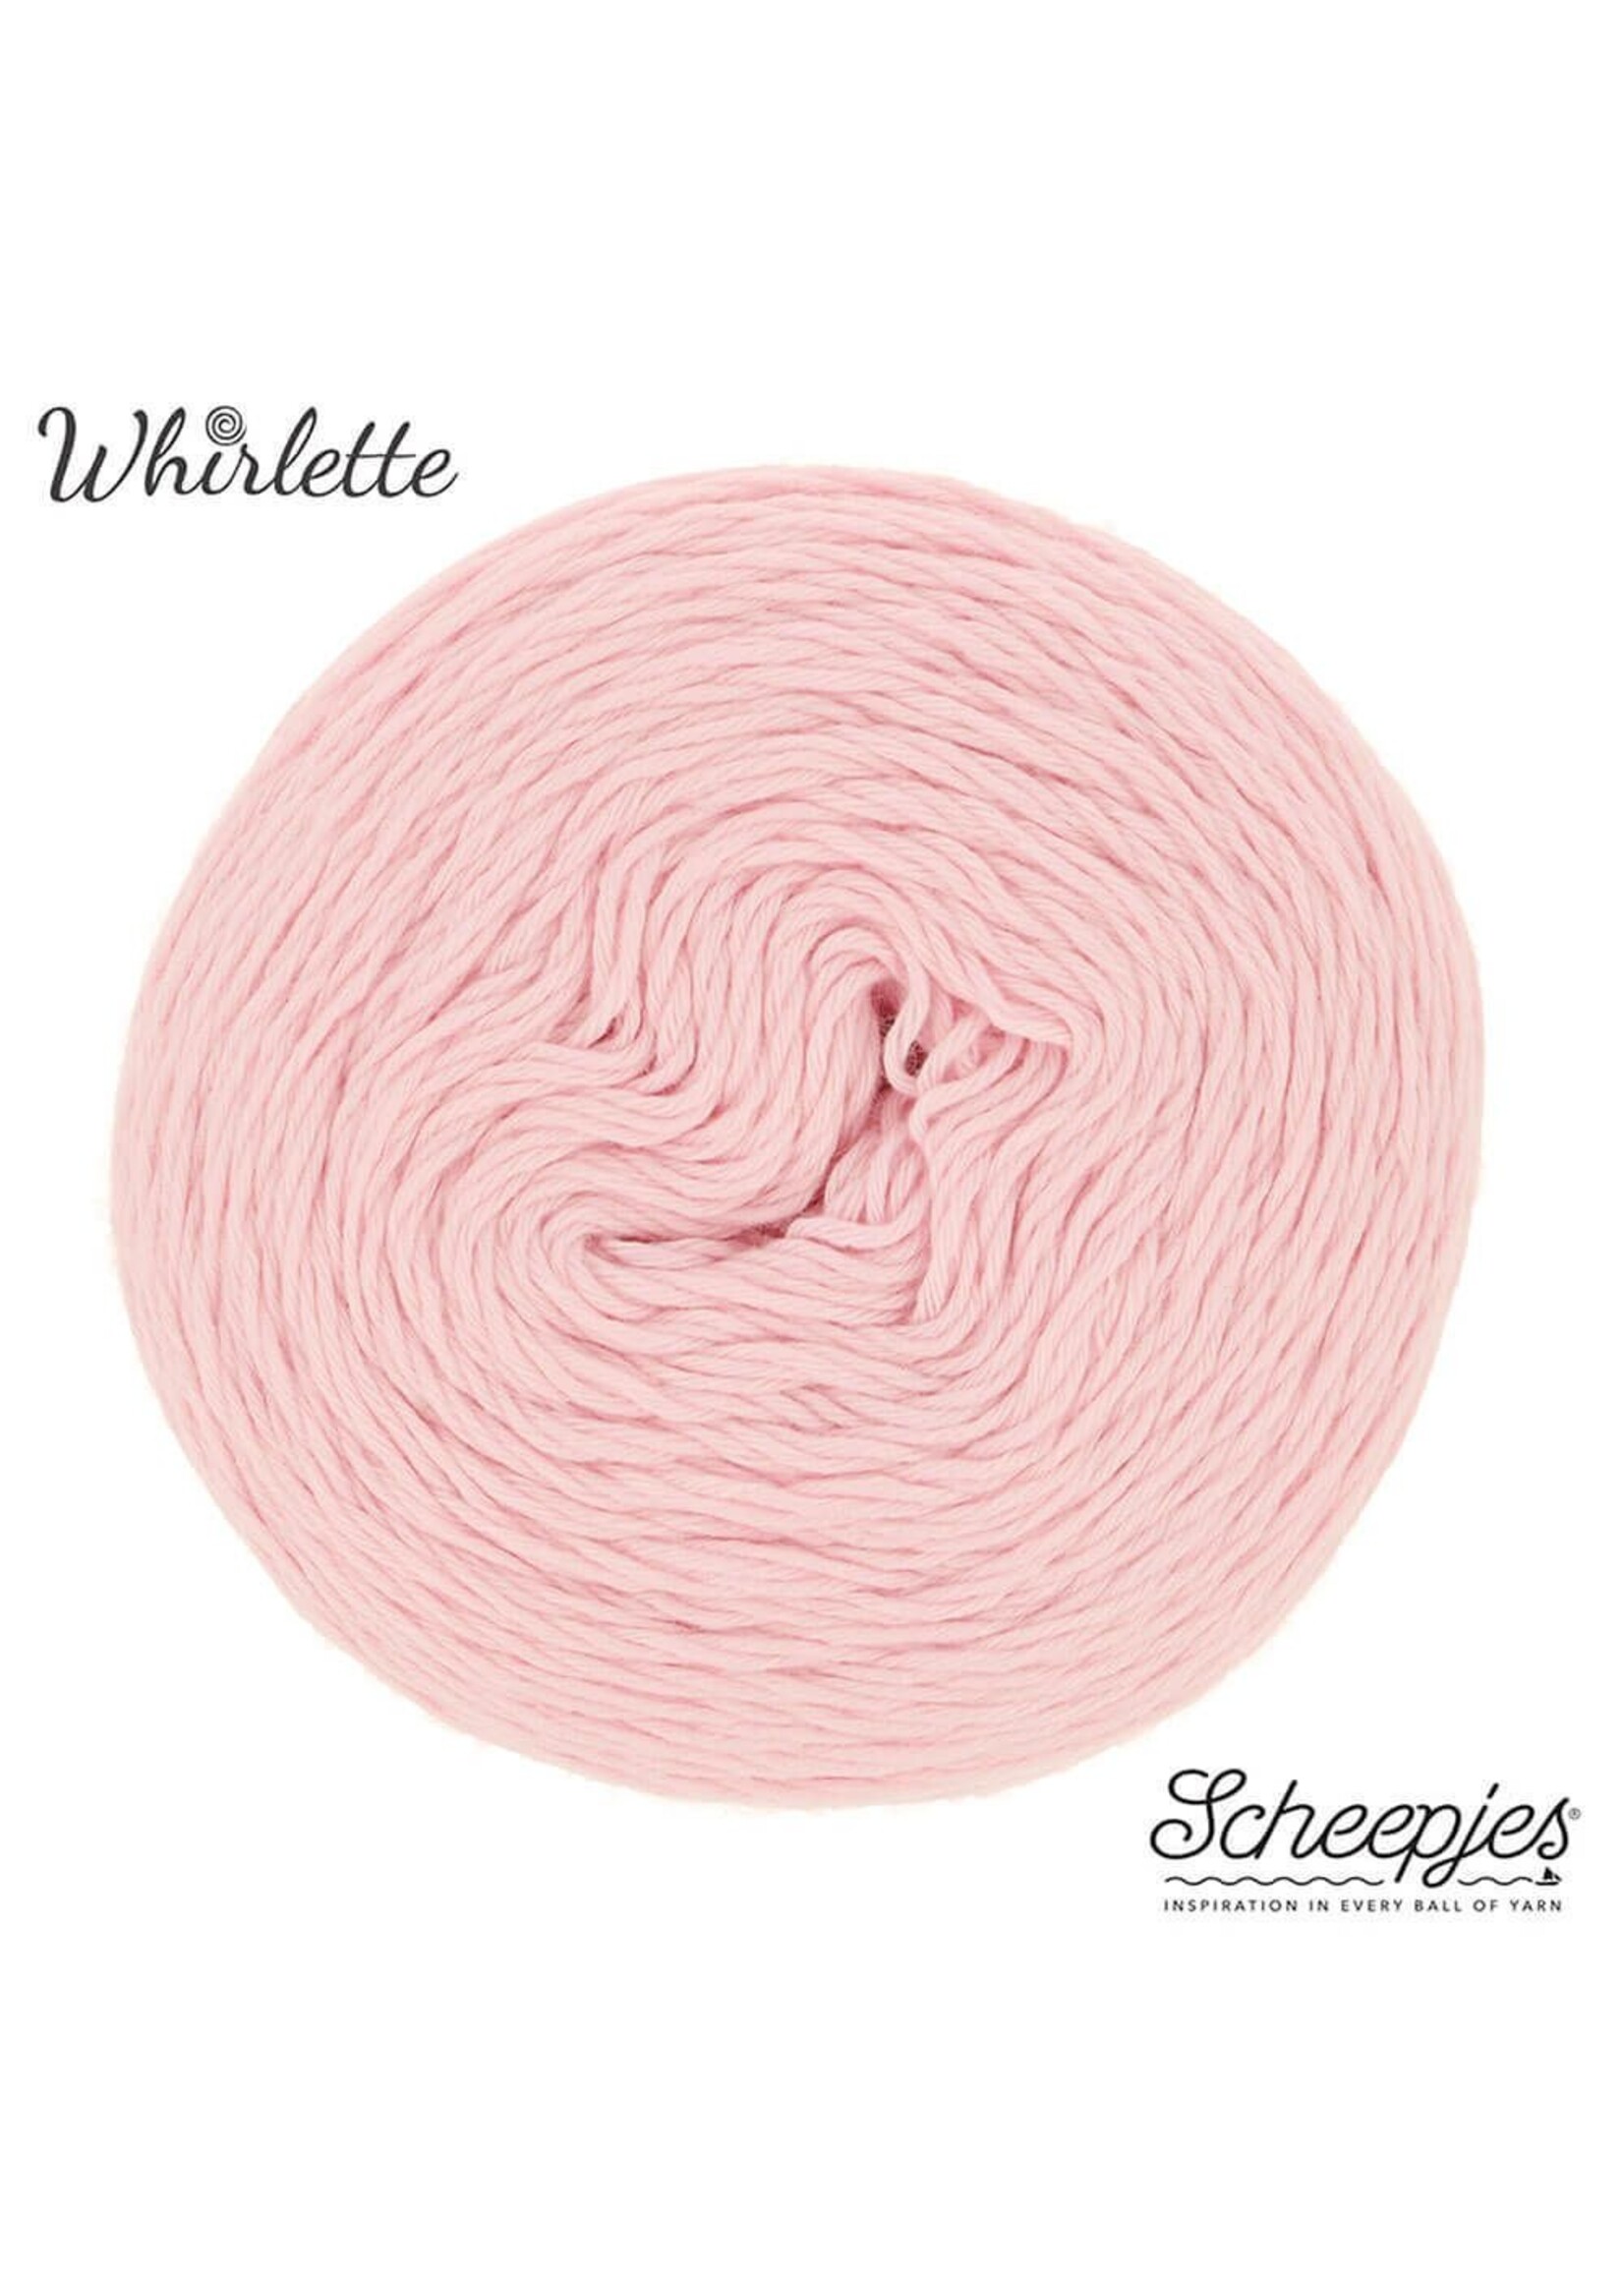 Scheepjes Whirlette - 862 Grapefruit